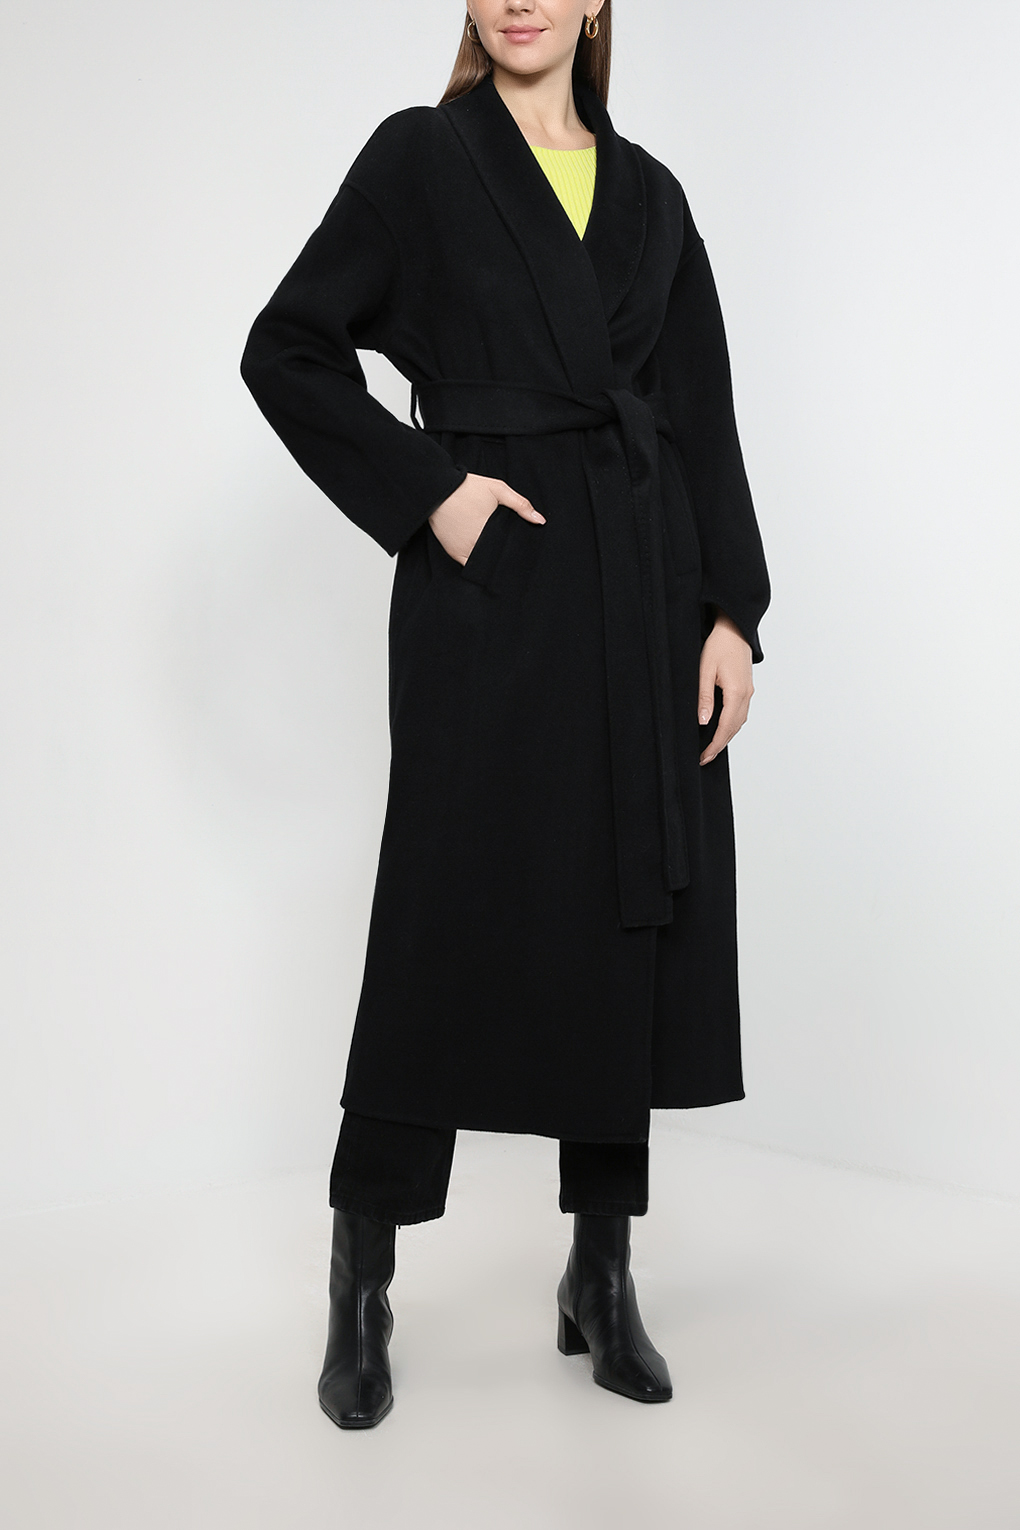 Пальто женское SABRINA SCALA SS23016206-001 черное 46 RU